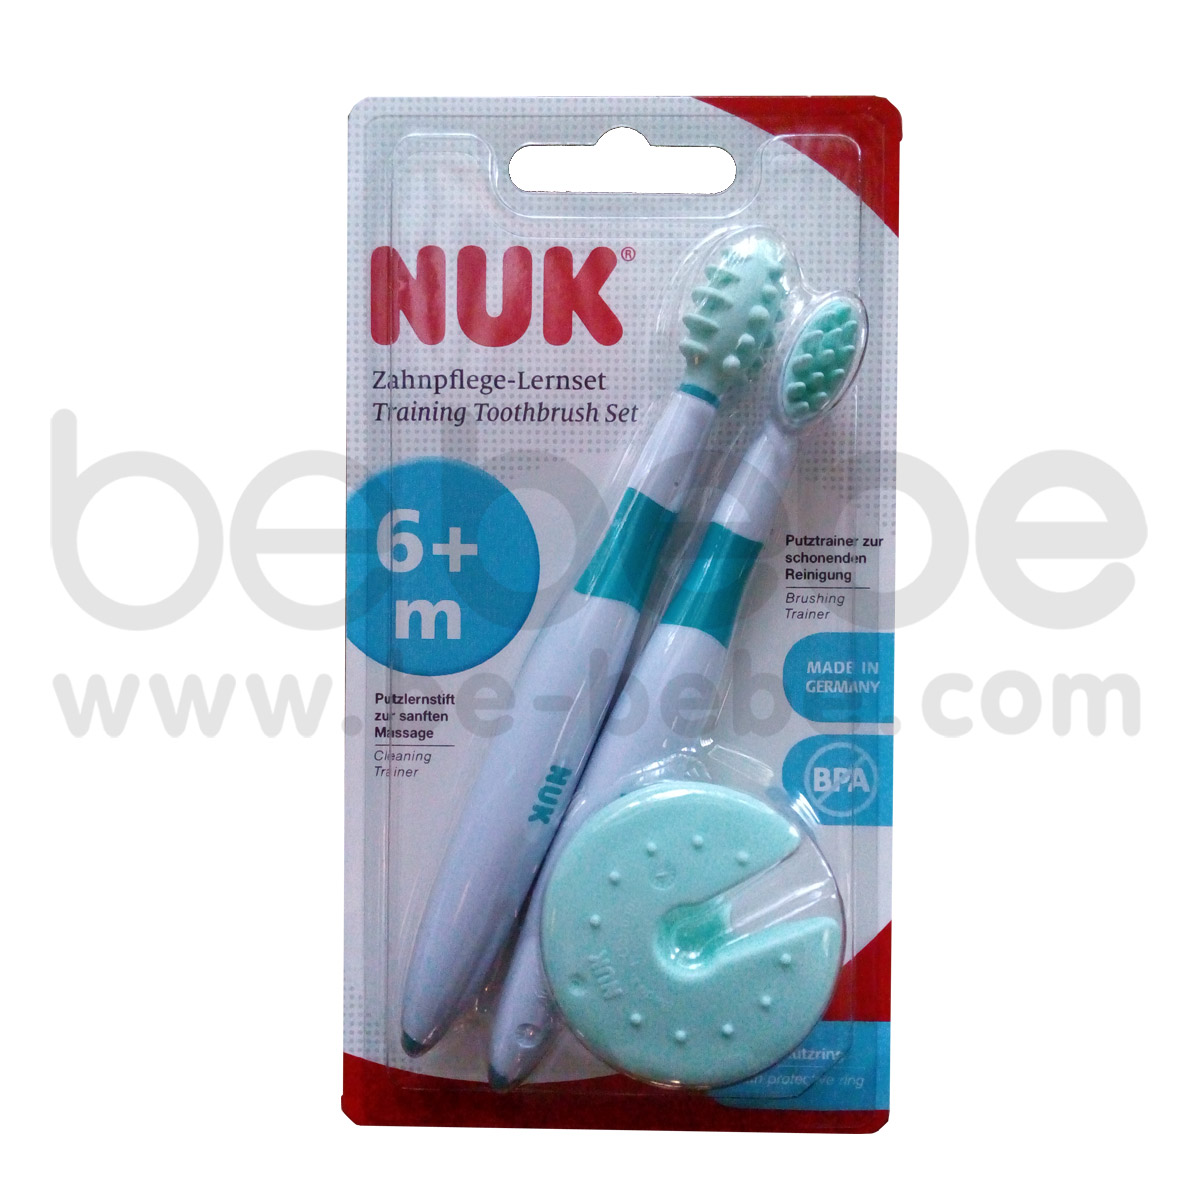 NUK:ชุดฝึกแปรงฟัน 